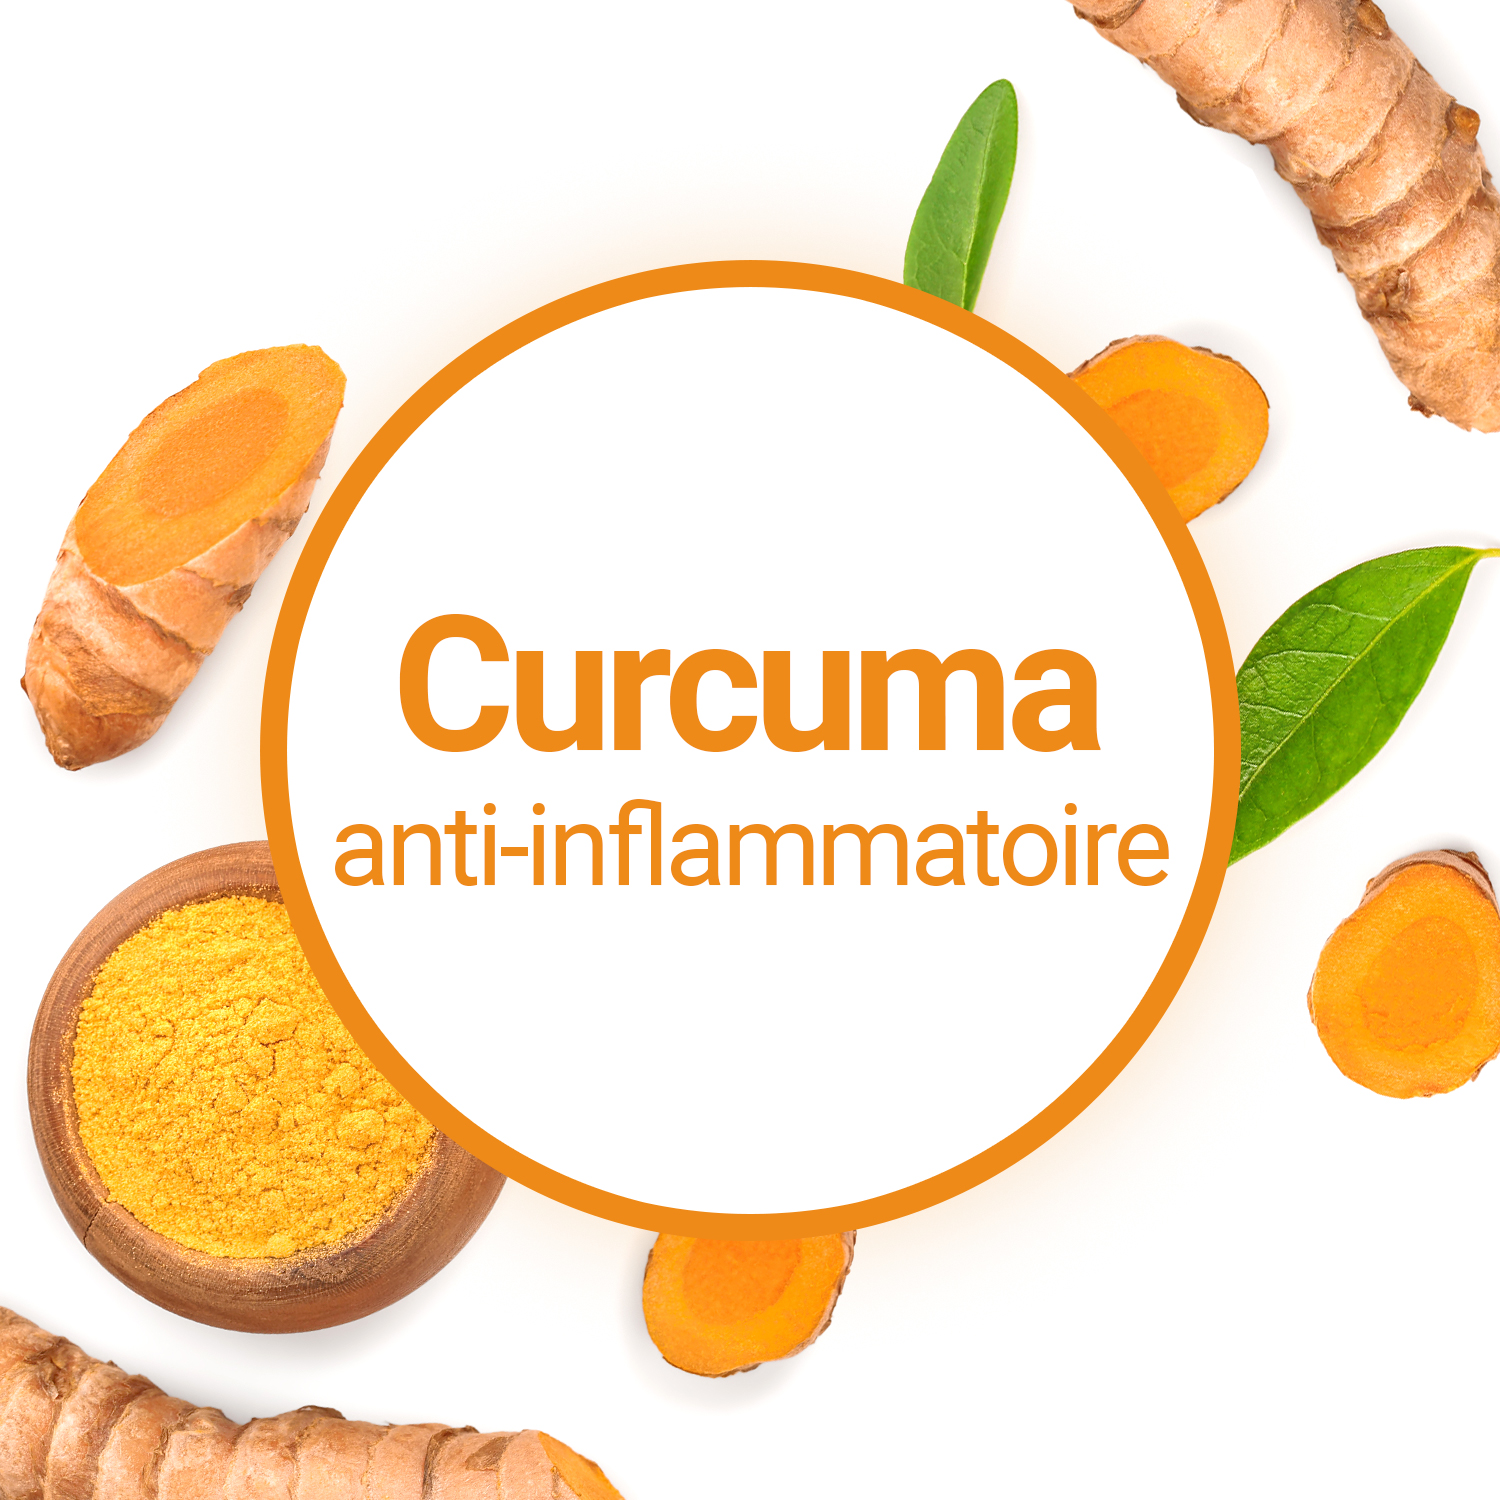 Utiliser le Curcuma comme anti-inflammatoire : pourquoi et comment ?